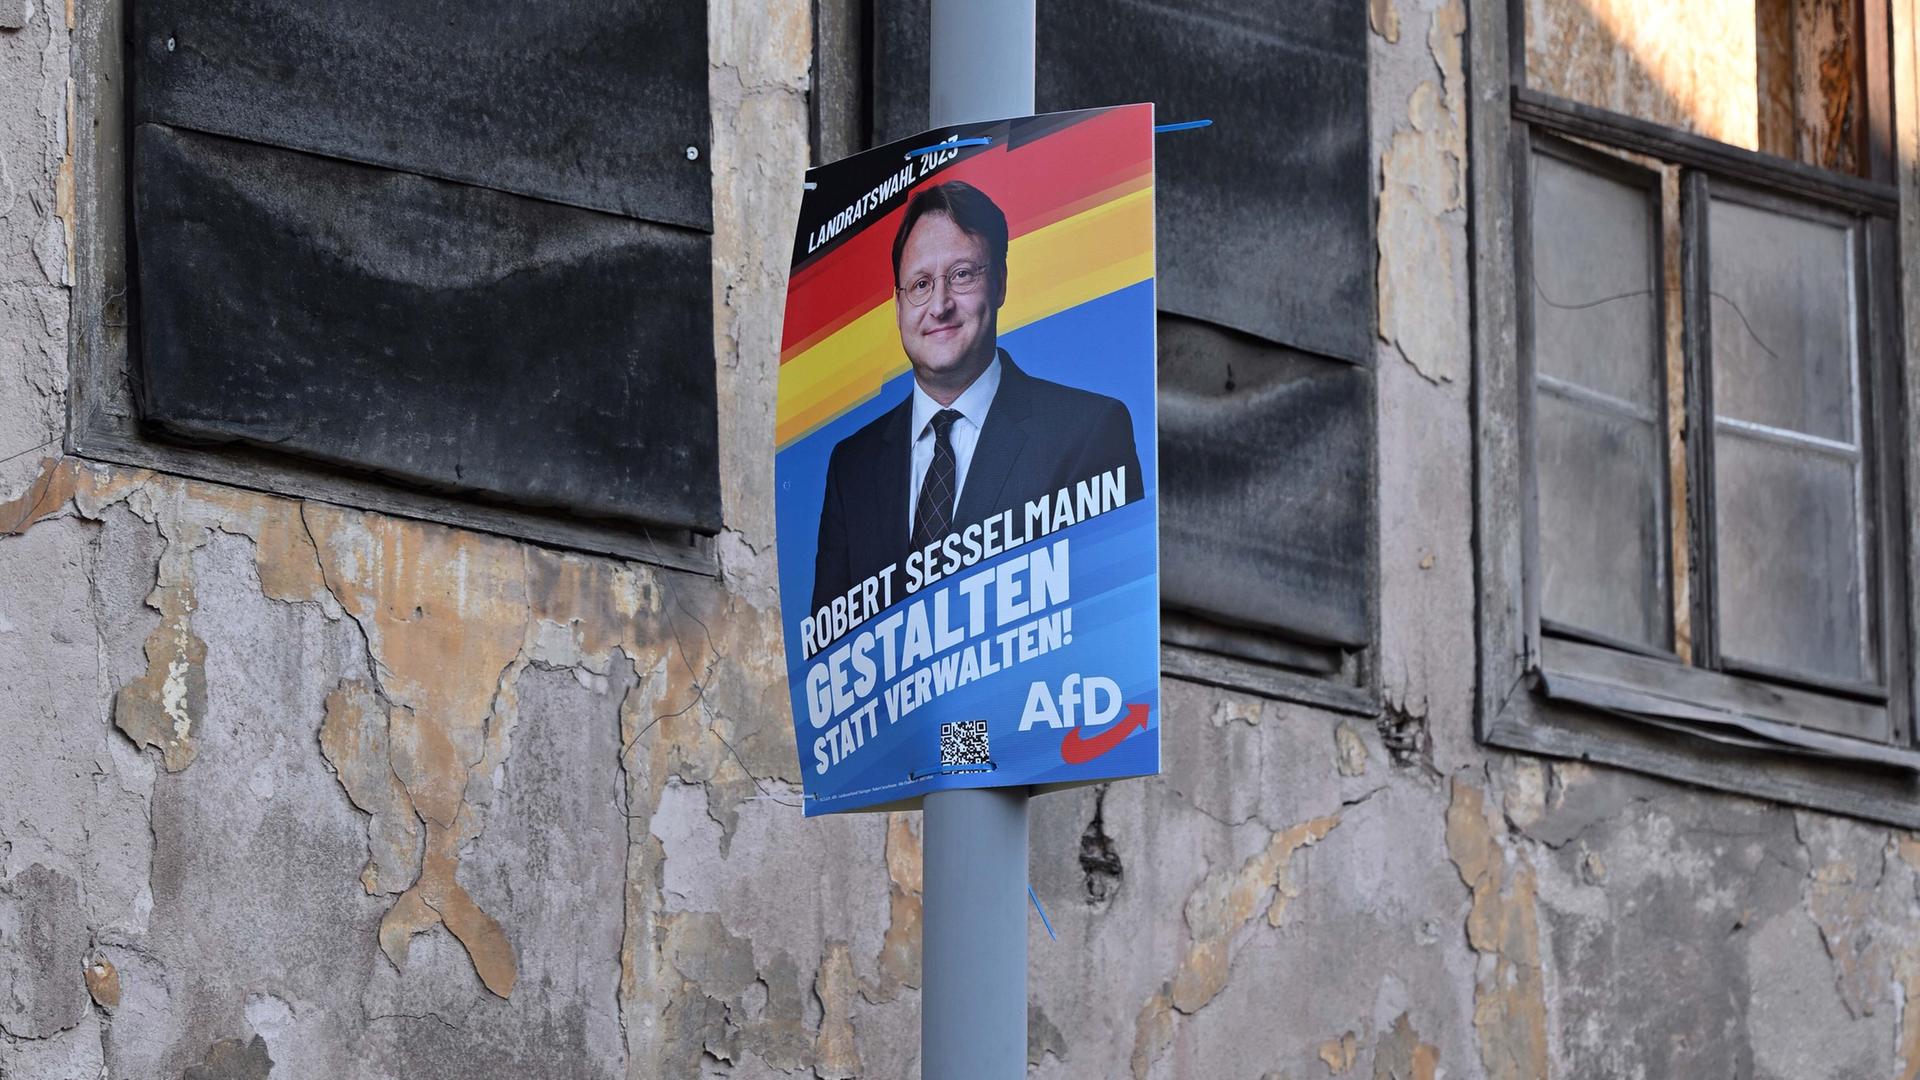 Vor dem Wahlerfolg von Robert Sesselmann: Wahlwerbung in der Sonneberger Innenstadt, (AfD) aufgenommen am Tag der Stichwahl